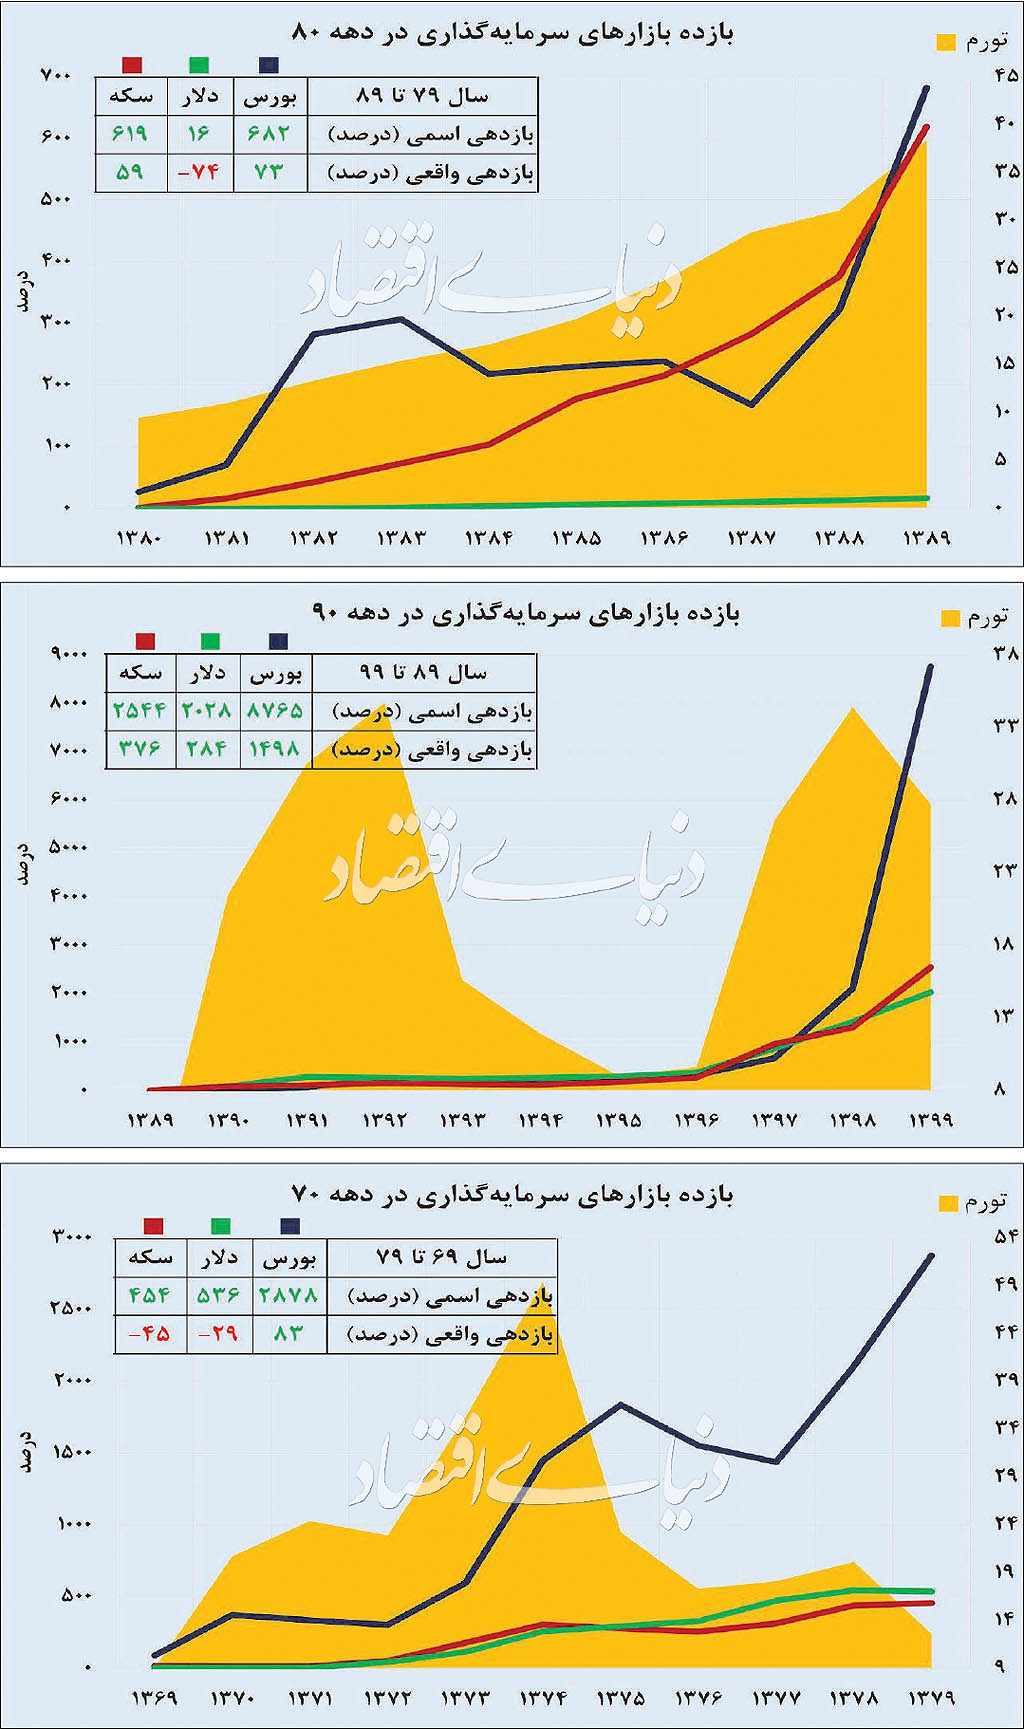 بررسی نوسانات ۳۰ ساله تورم و بازارها در ایران+نمودار